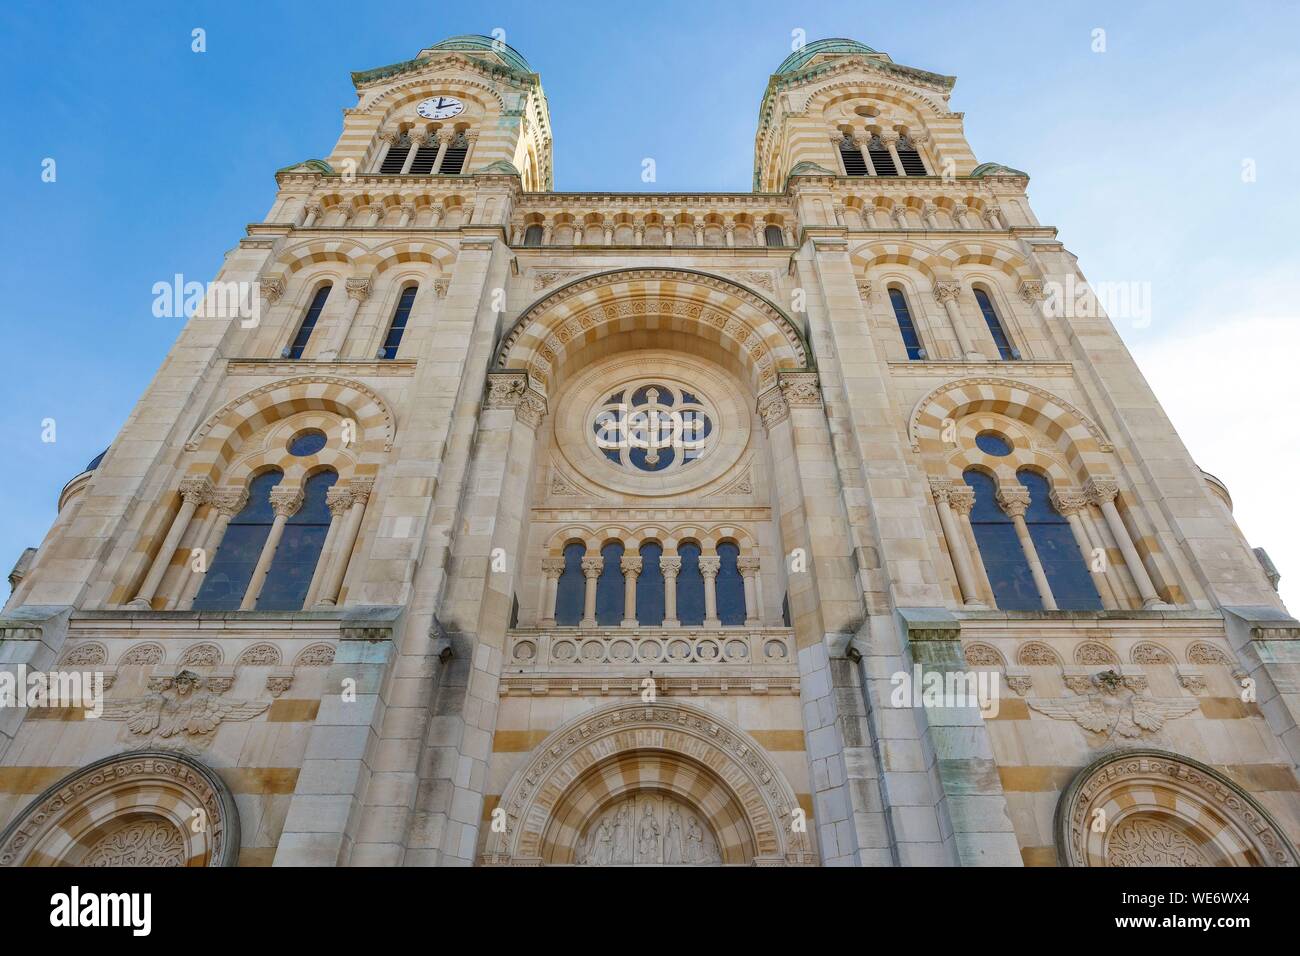 France, Meurthe et Moselle, Nancy, façade de la basilique du Sacré-Cœur de Nancy en style byzantin romain Banque D'Images